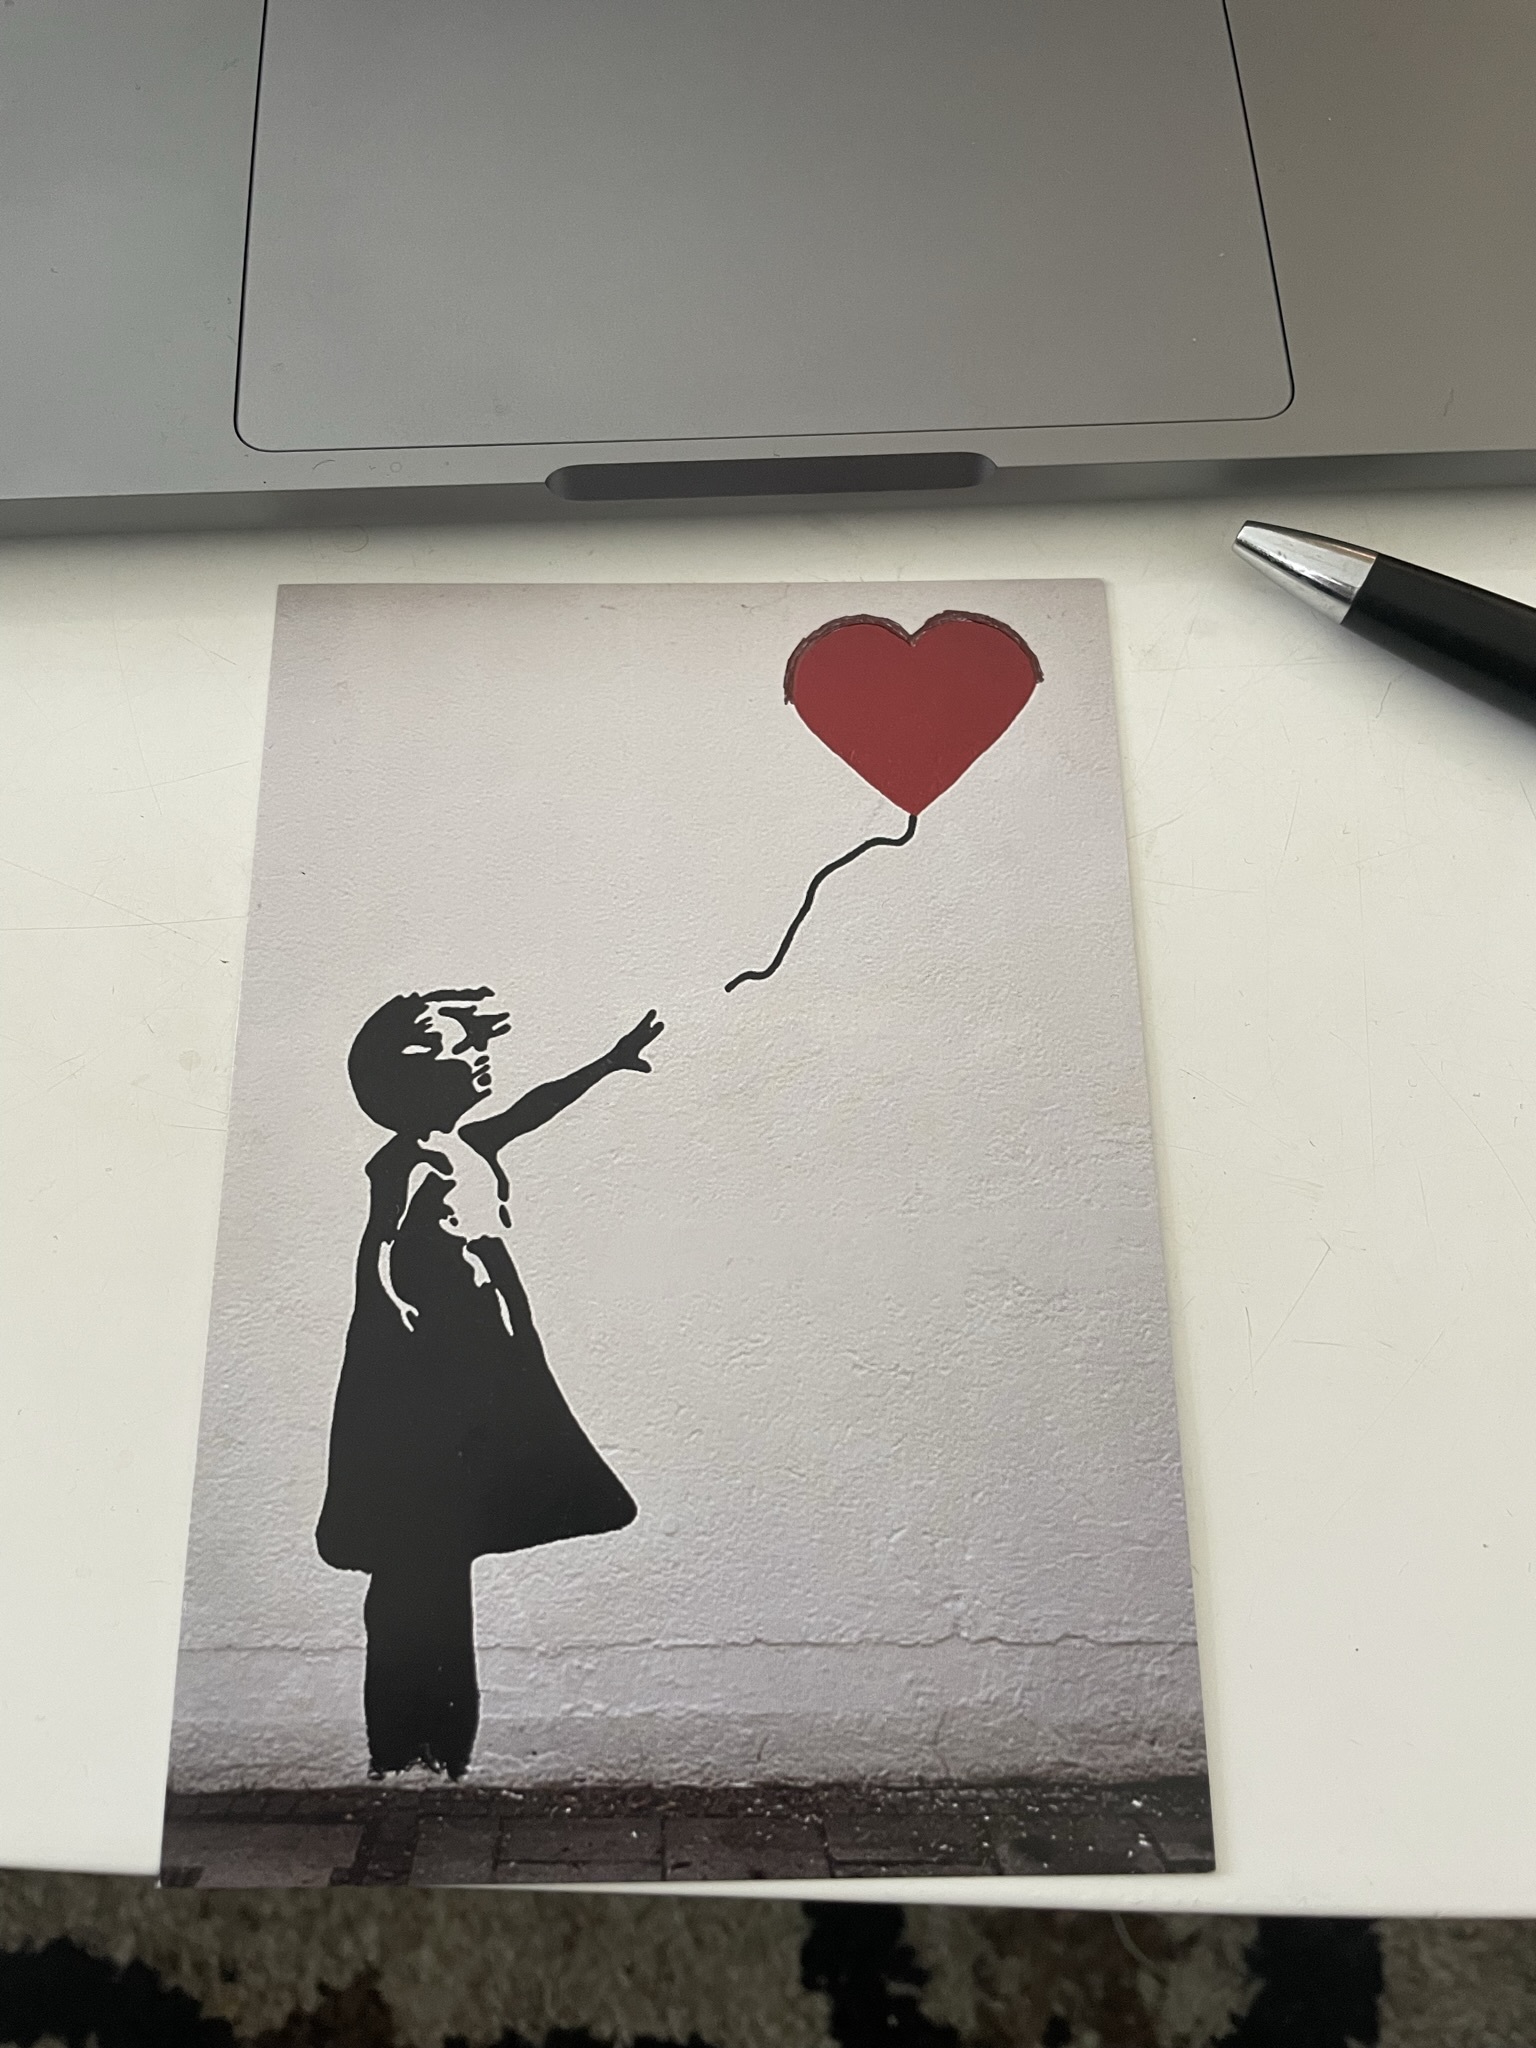 Eine Postkarte mit dem Banksy-Graffiti eines kleinen Kindes, das einen roten herzförmigen Luftballon fliegen lässt. Die Rundungen des Luftballons wurden mit schwarzem Kugelschreiber nachgezogen.